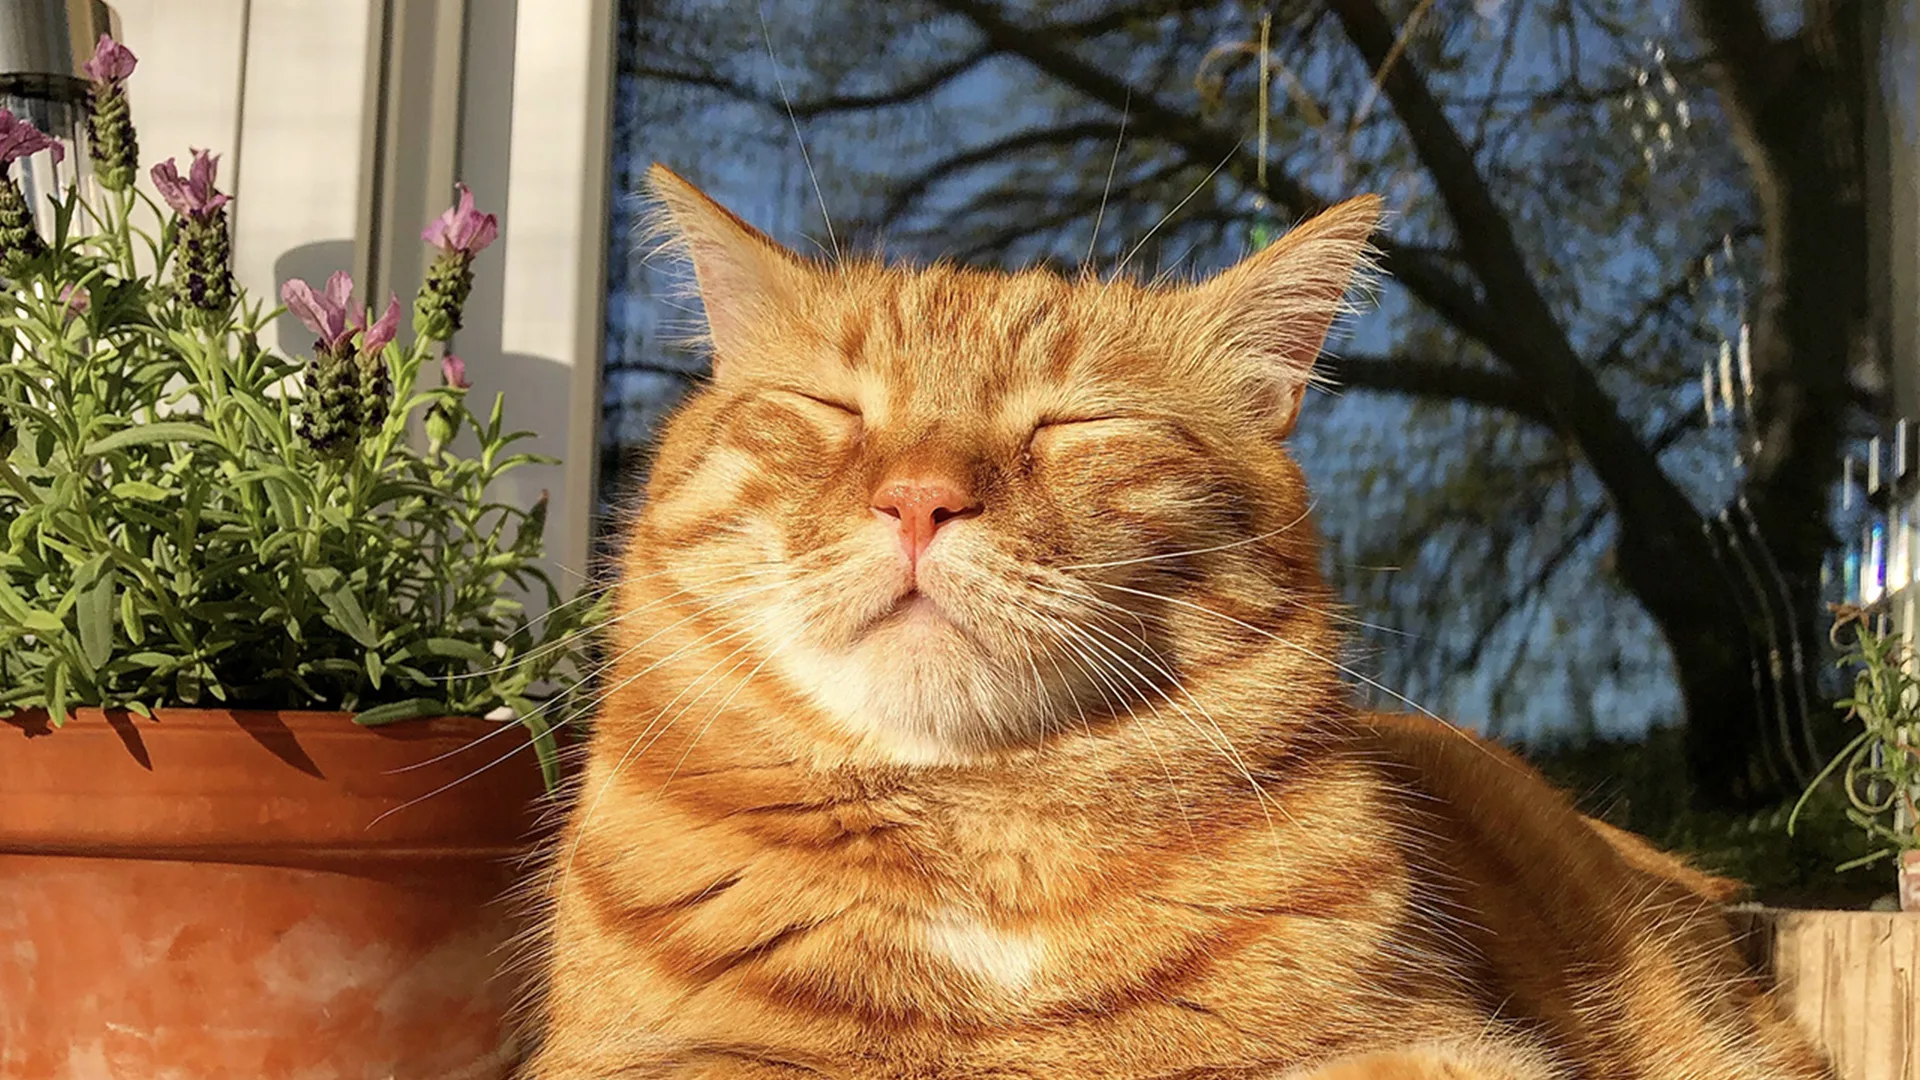 Ginger cat sleeping in the sunlight